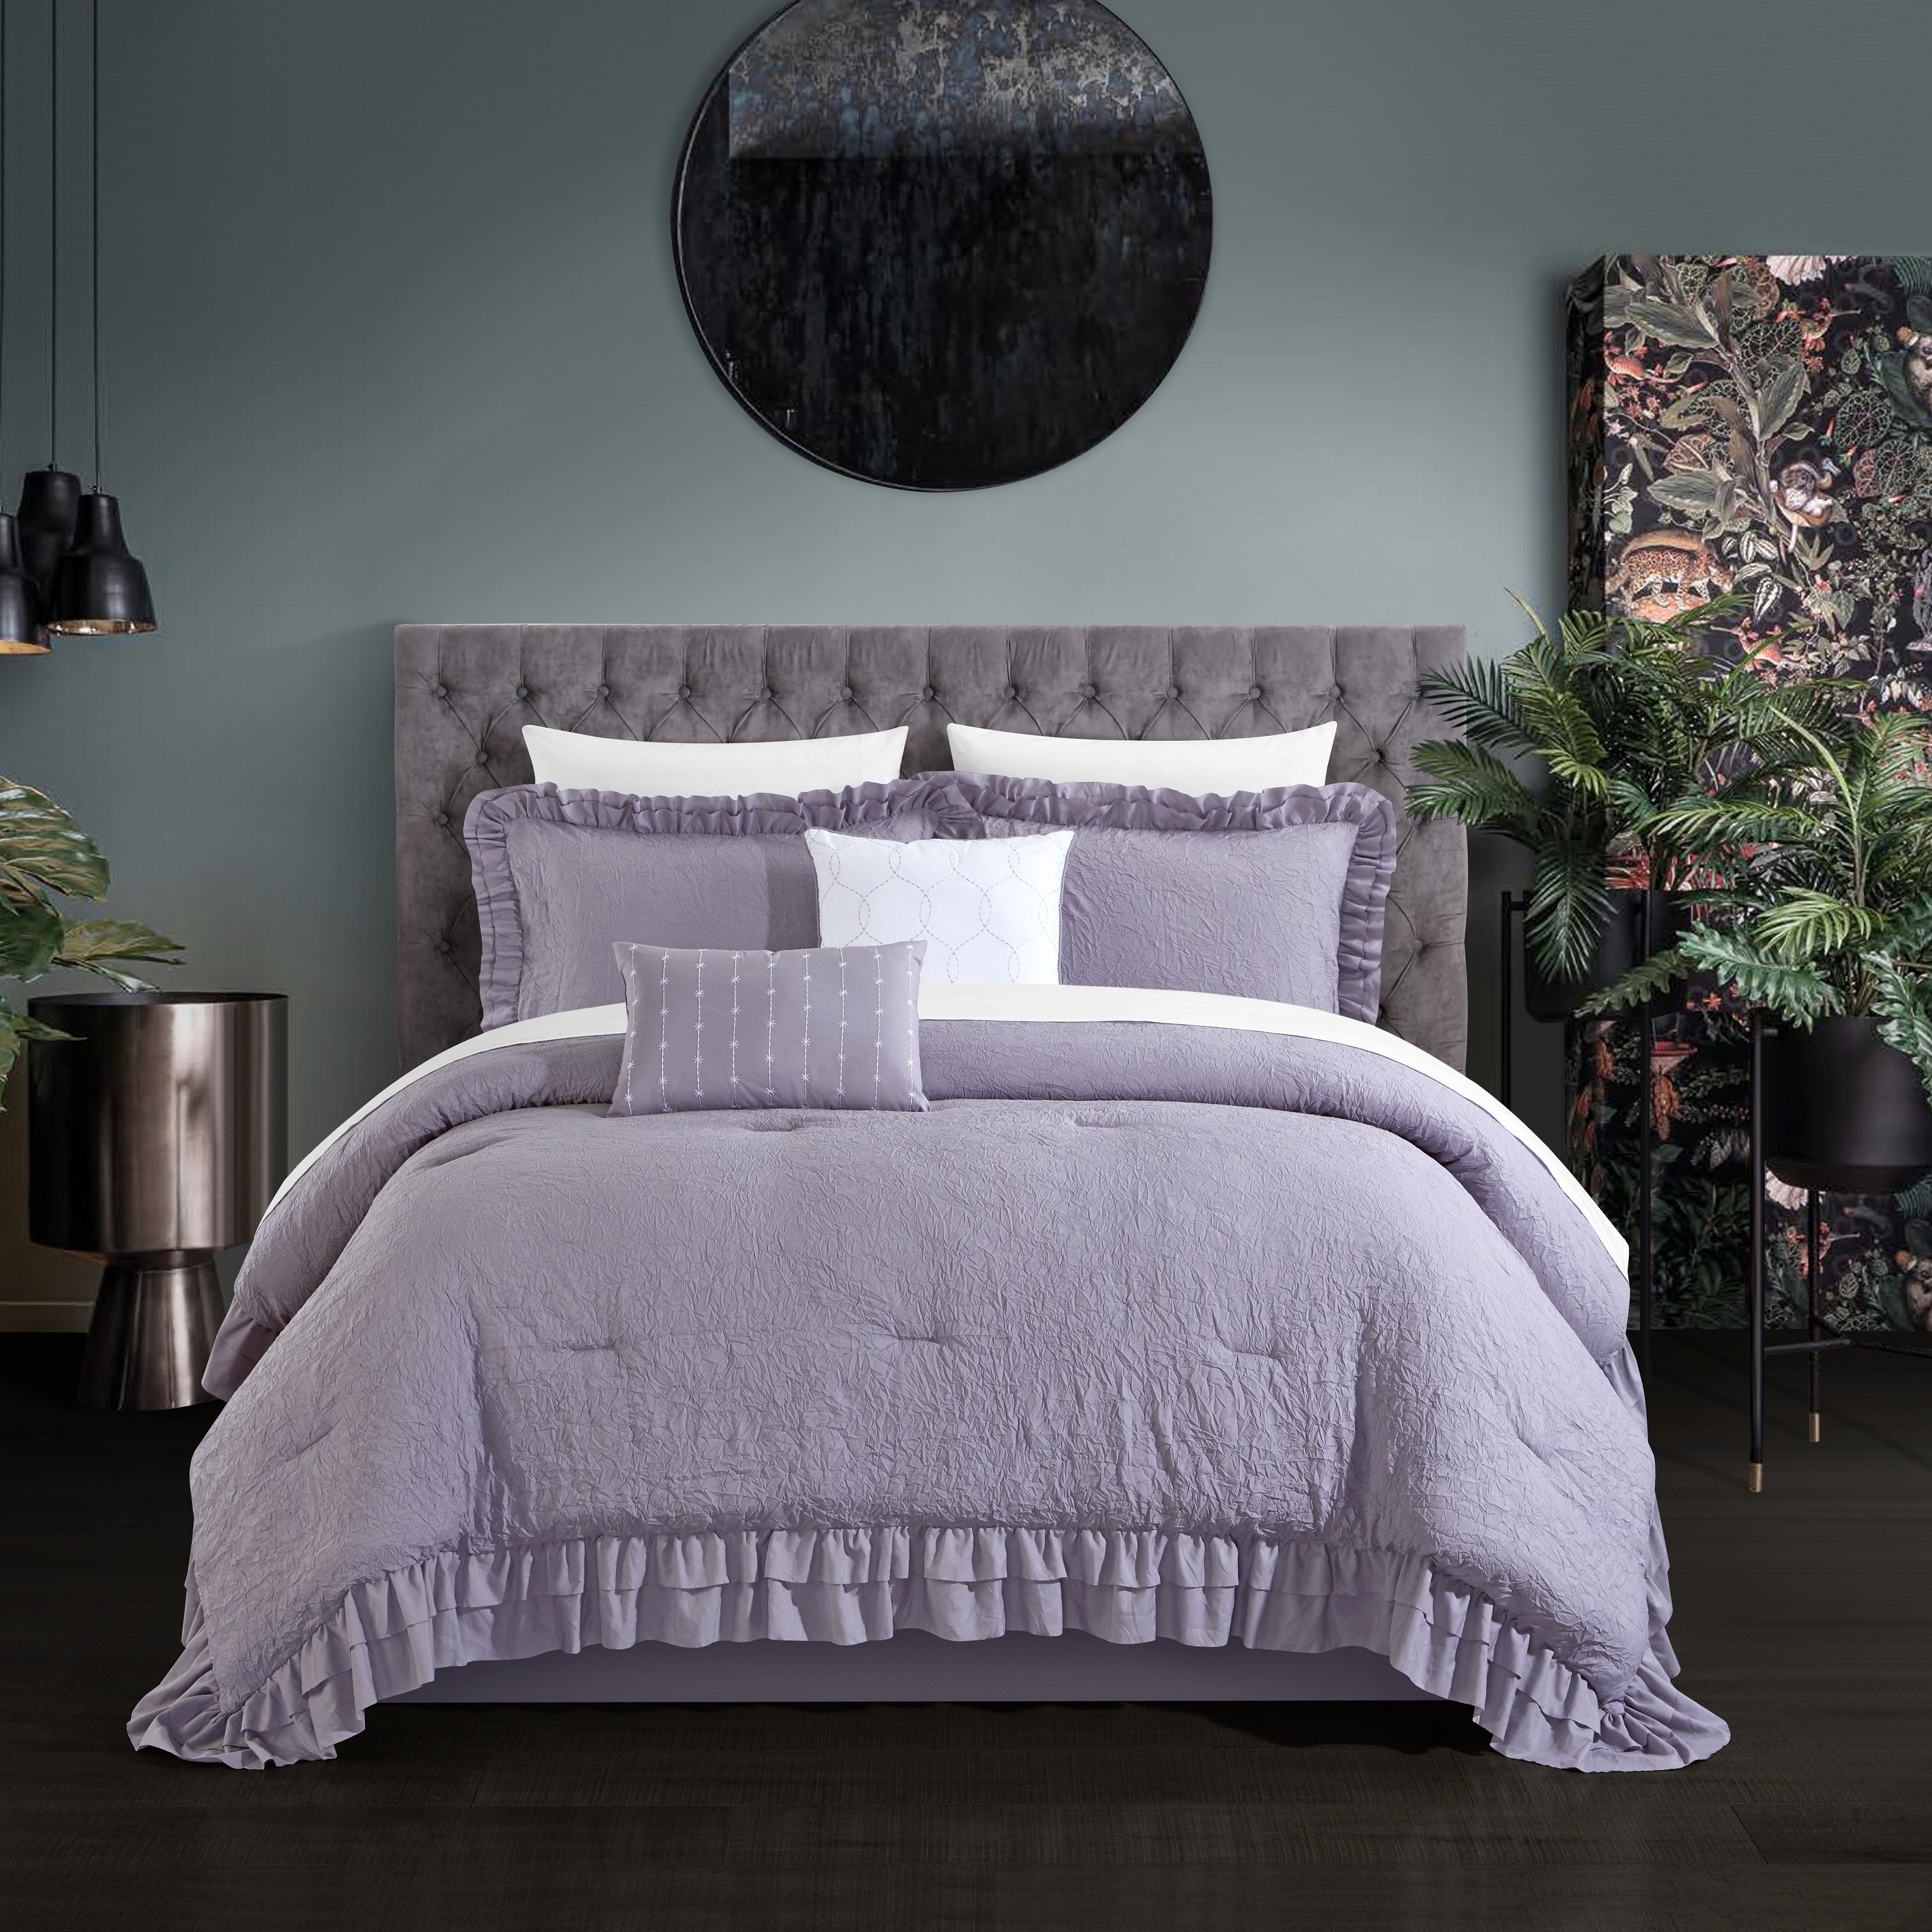 5 piece Kensley Comforter Set Washed Crinkle Ruffled Flange Border Design Bedding - Lavender, King - king purple